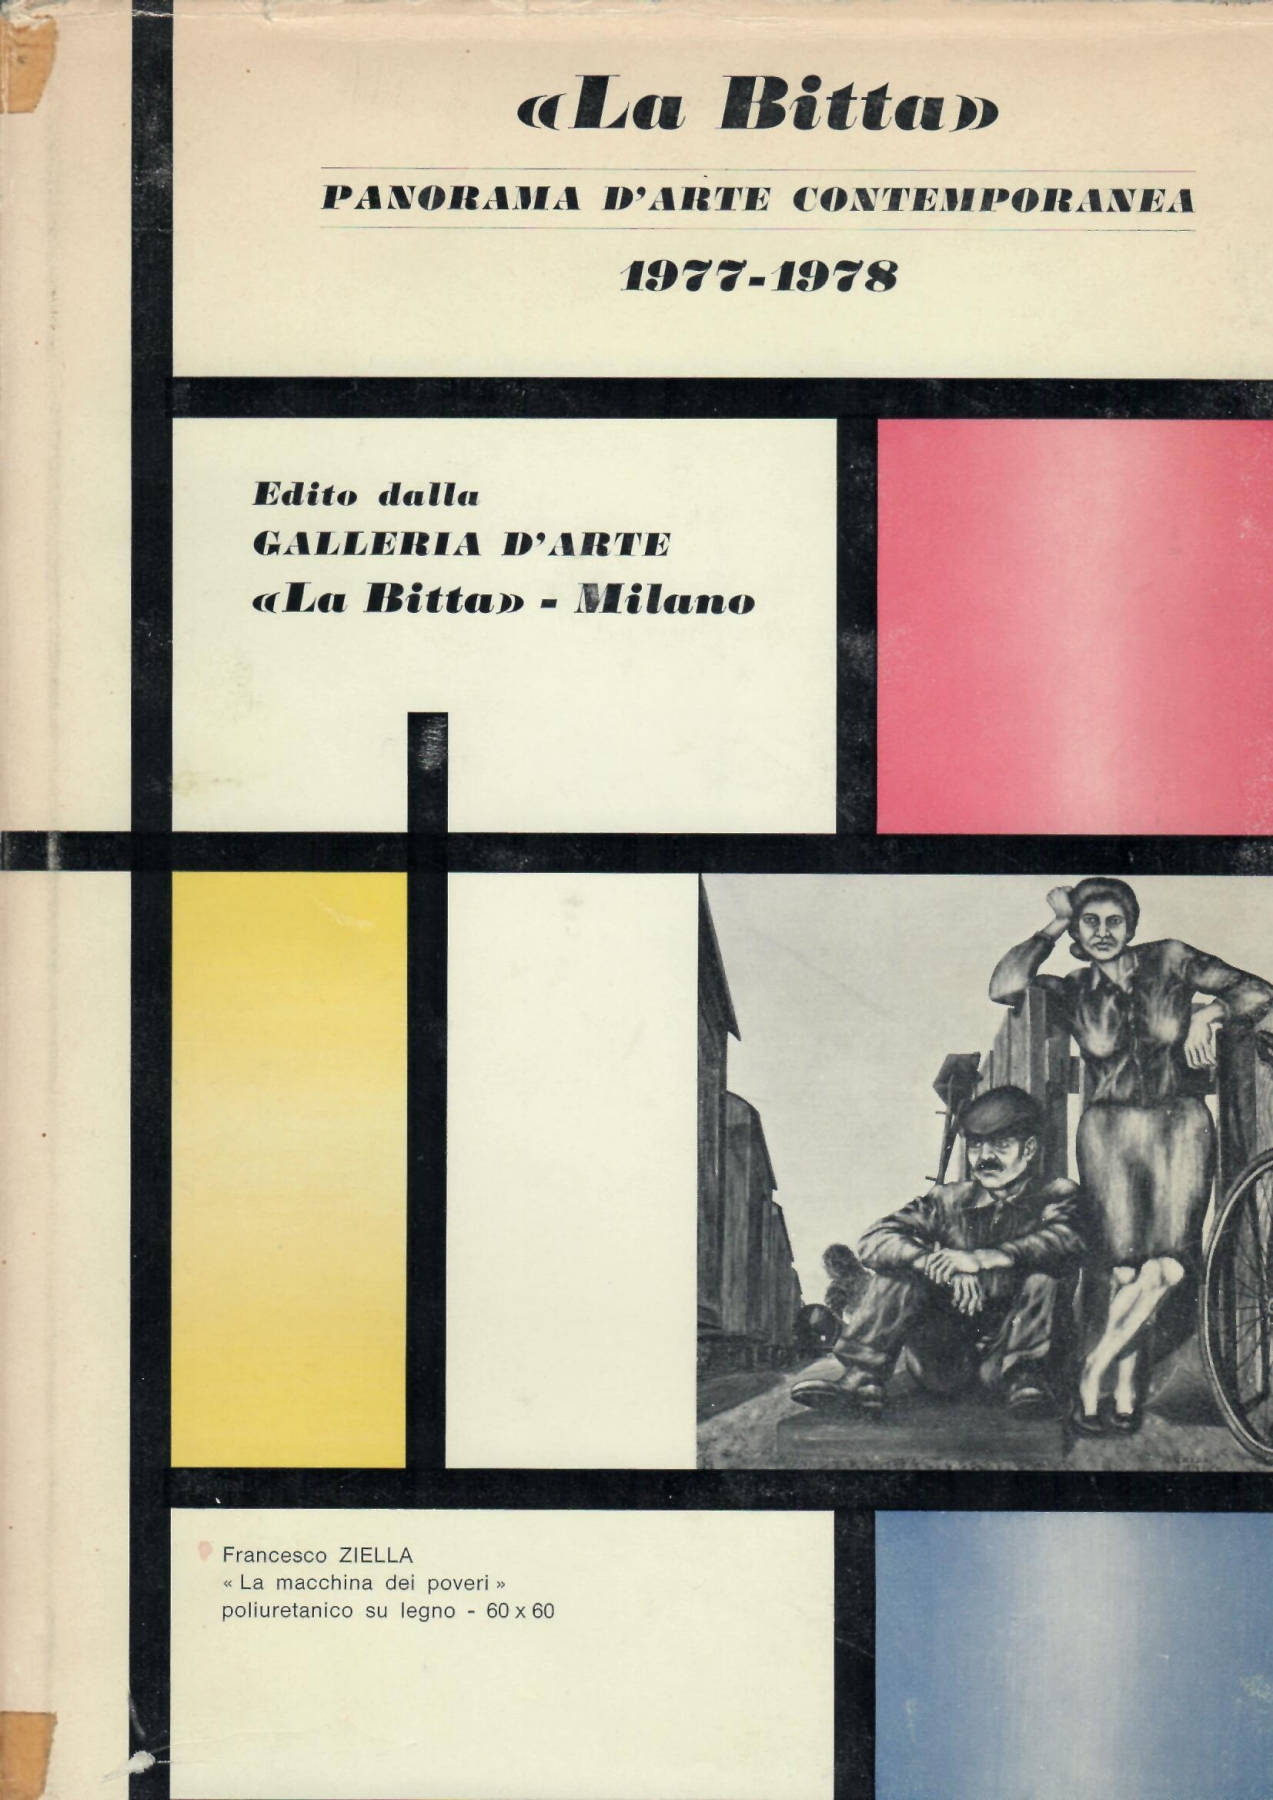  <b>Rivista La Bitta del 1978 </b>, pubblicazione con recensione  di R. Cortina, dipinto di A. Bertrand 'Collezione Daniel Hoffmann', 40x40, anno 1977, pag. 27